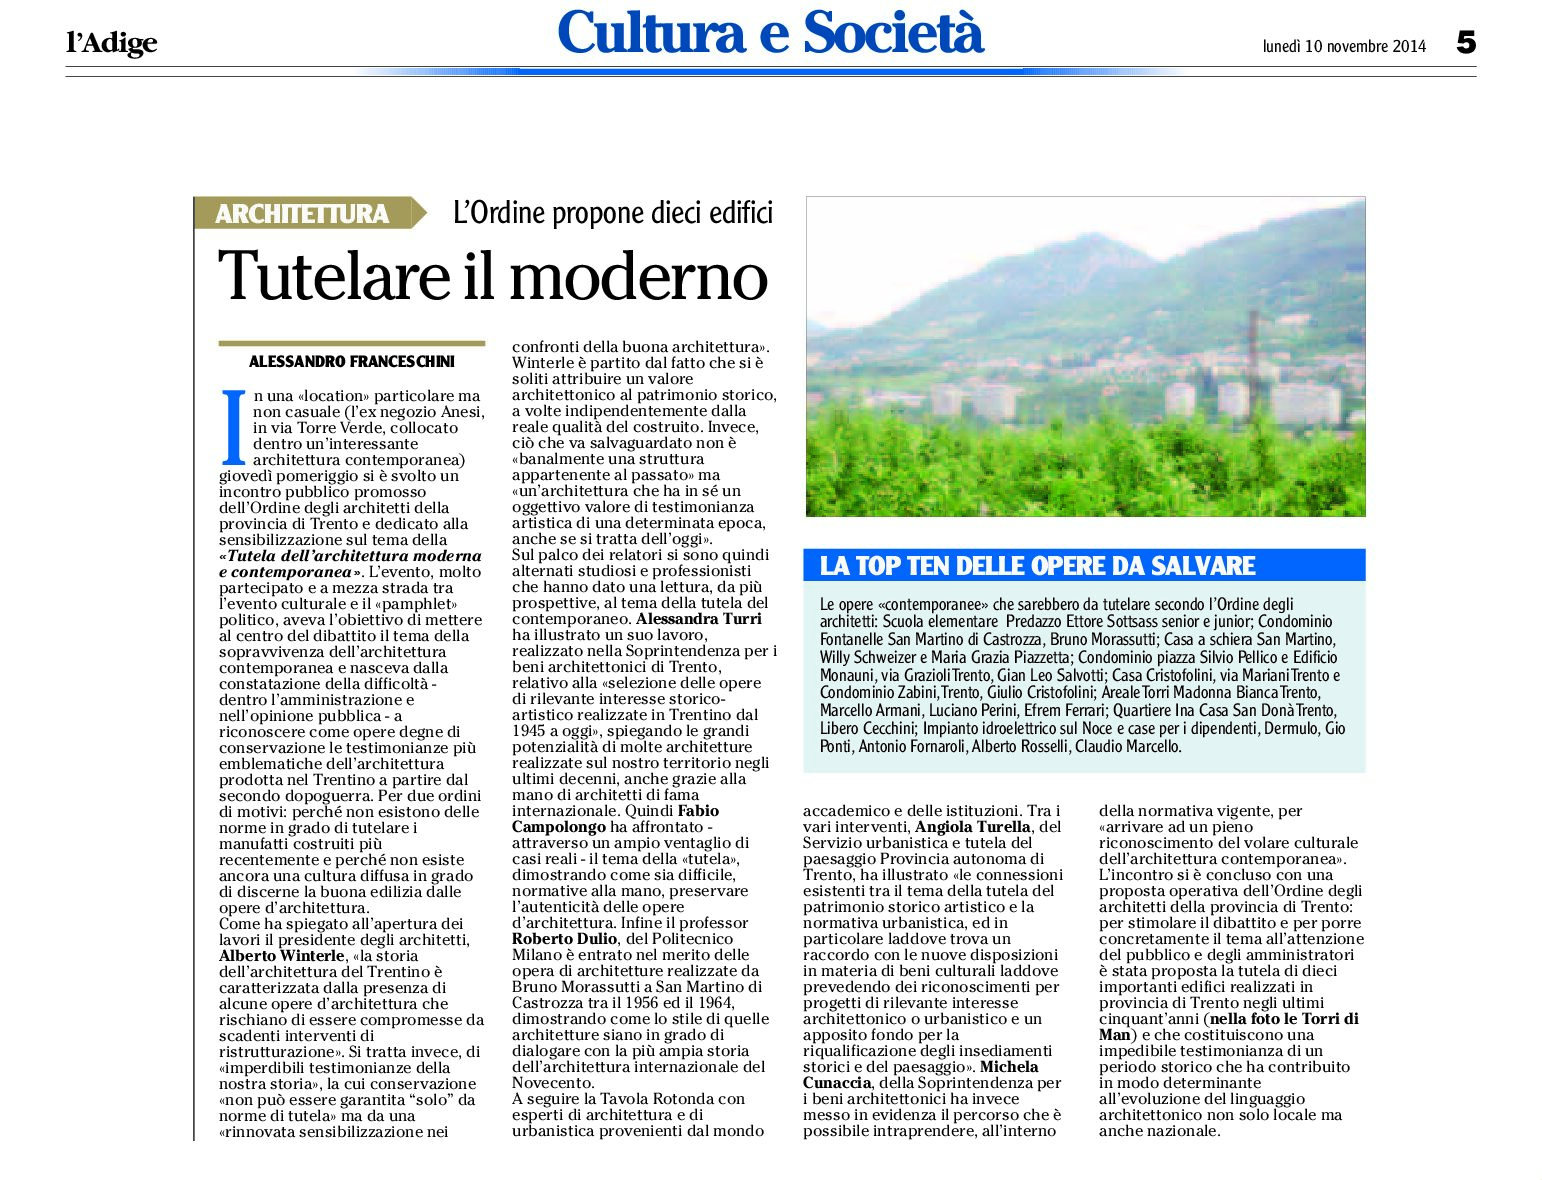 Trentino: la top ten delle opere moderne da salvare secondo l’Ordine degli architetti